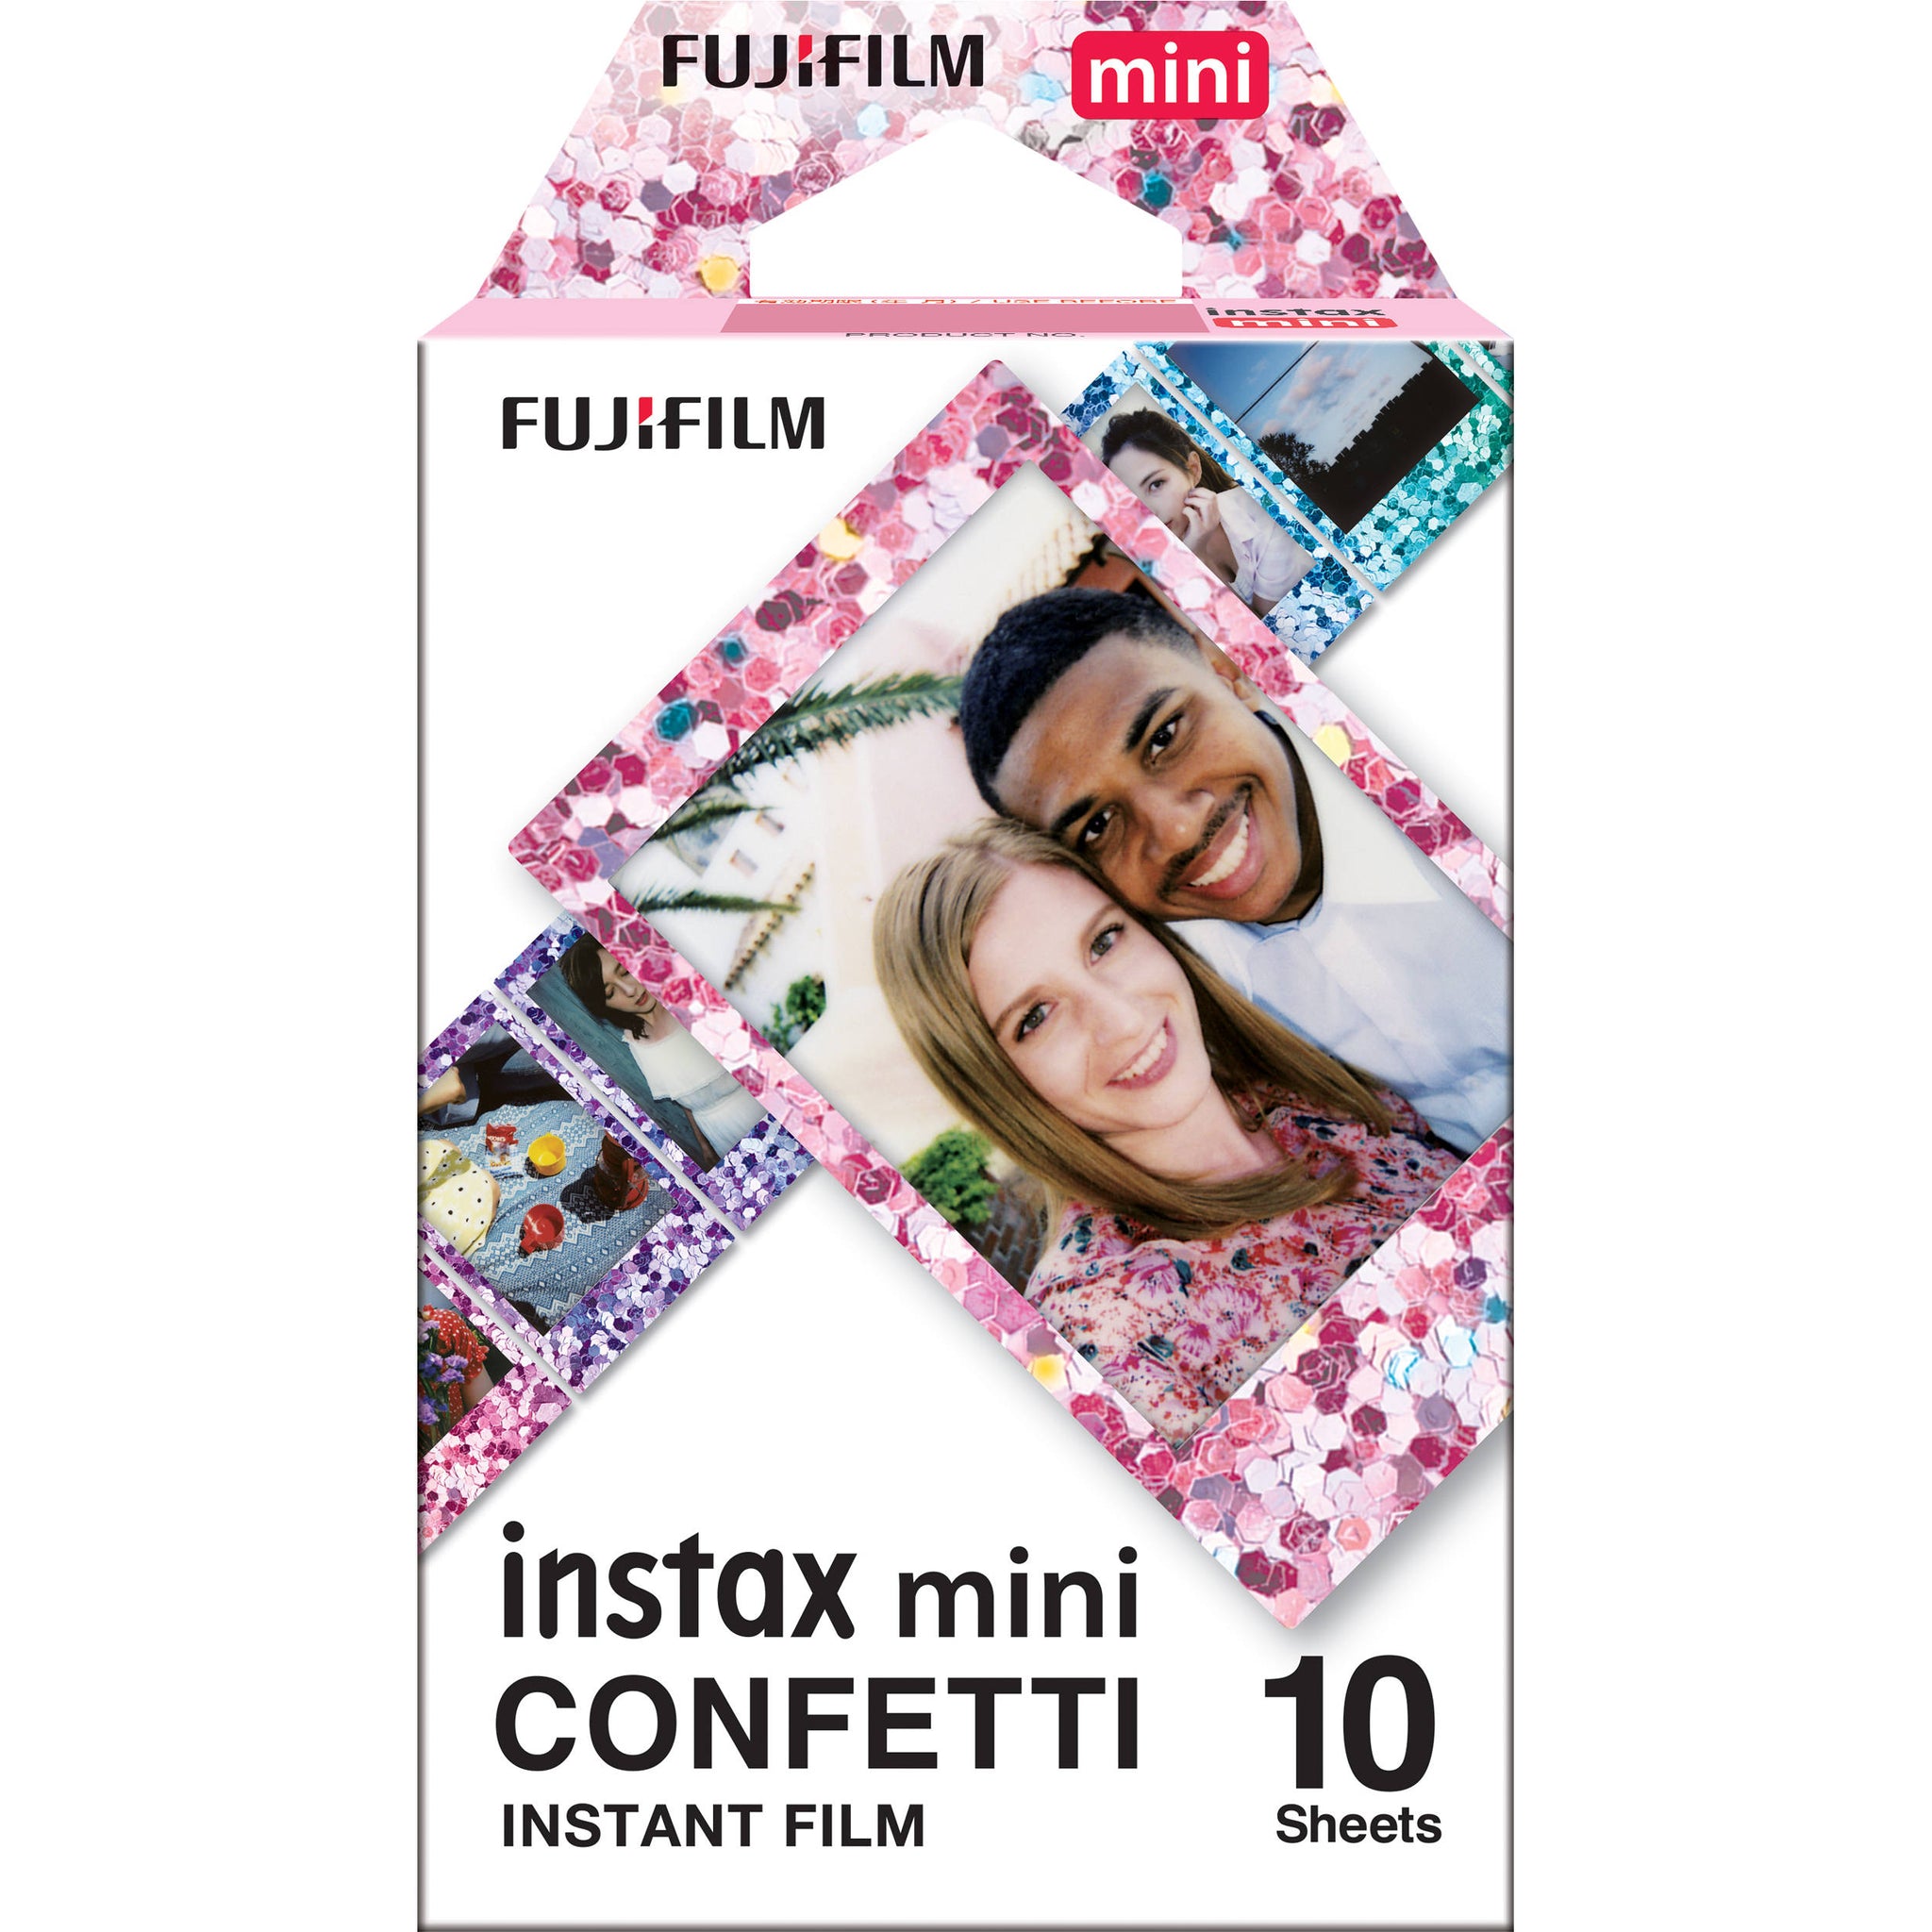 FUJIFILM Instax Mini, Confetti